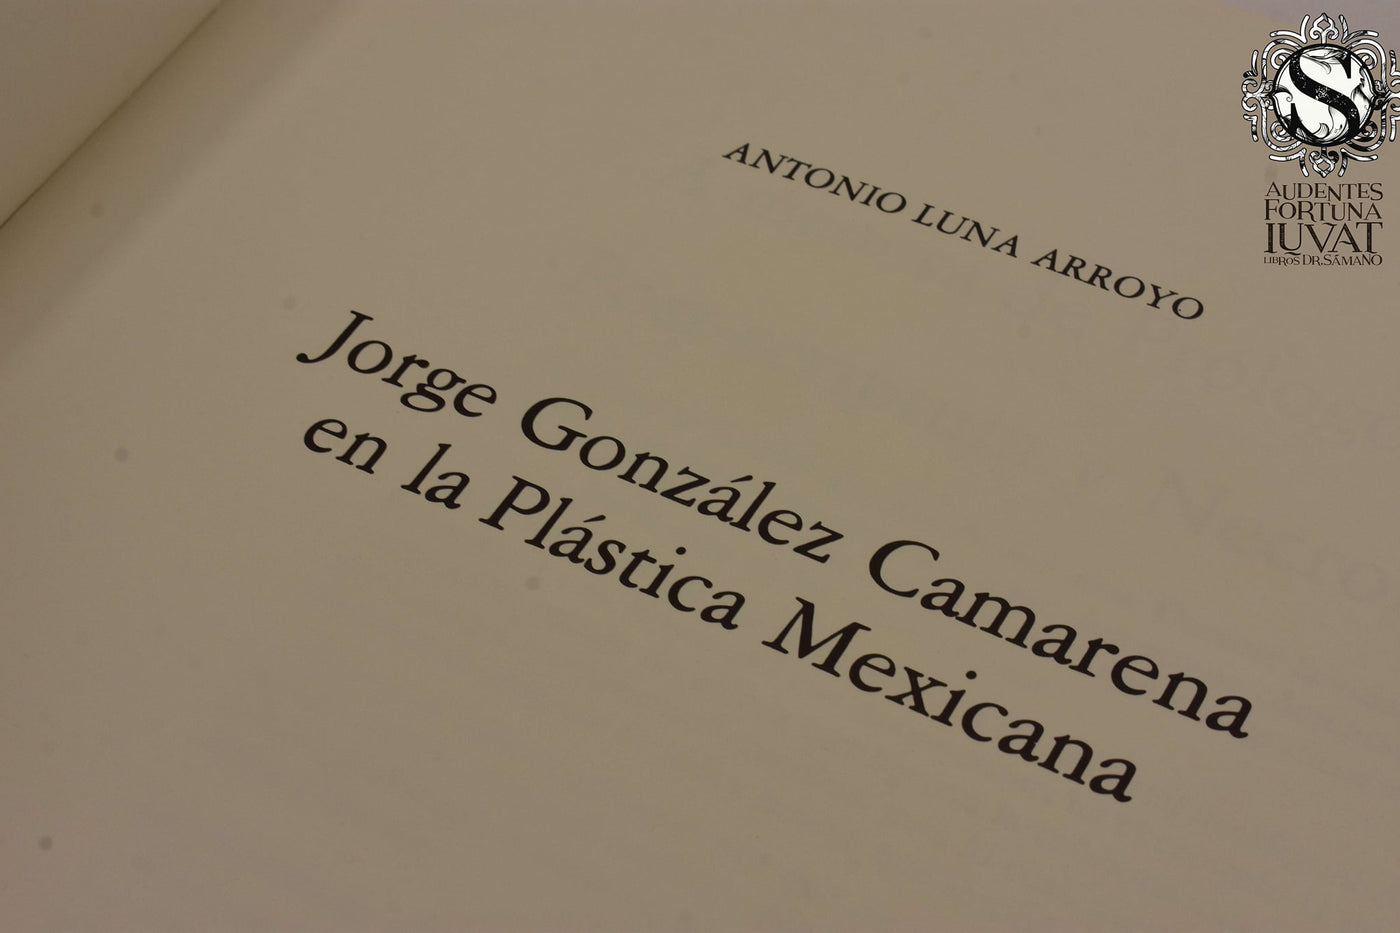 JORGE GONZÁLEZ CAMARENA EN LA PLÁSTICA MEXICANA - Antonio Luna Arroyo